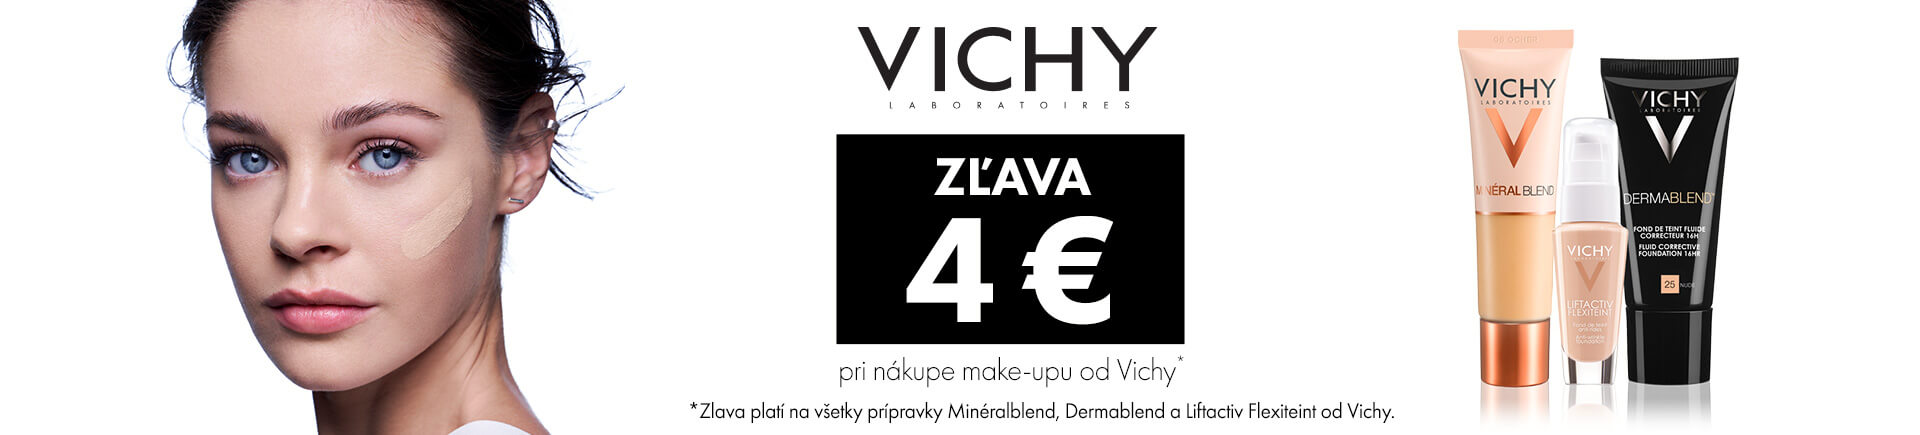 Vichy make-up - marec